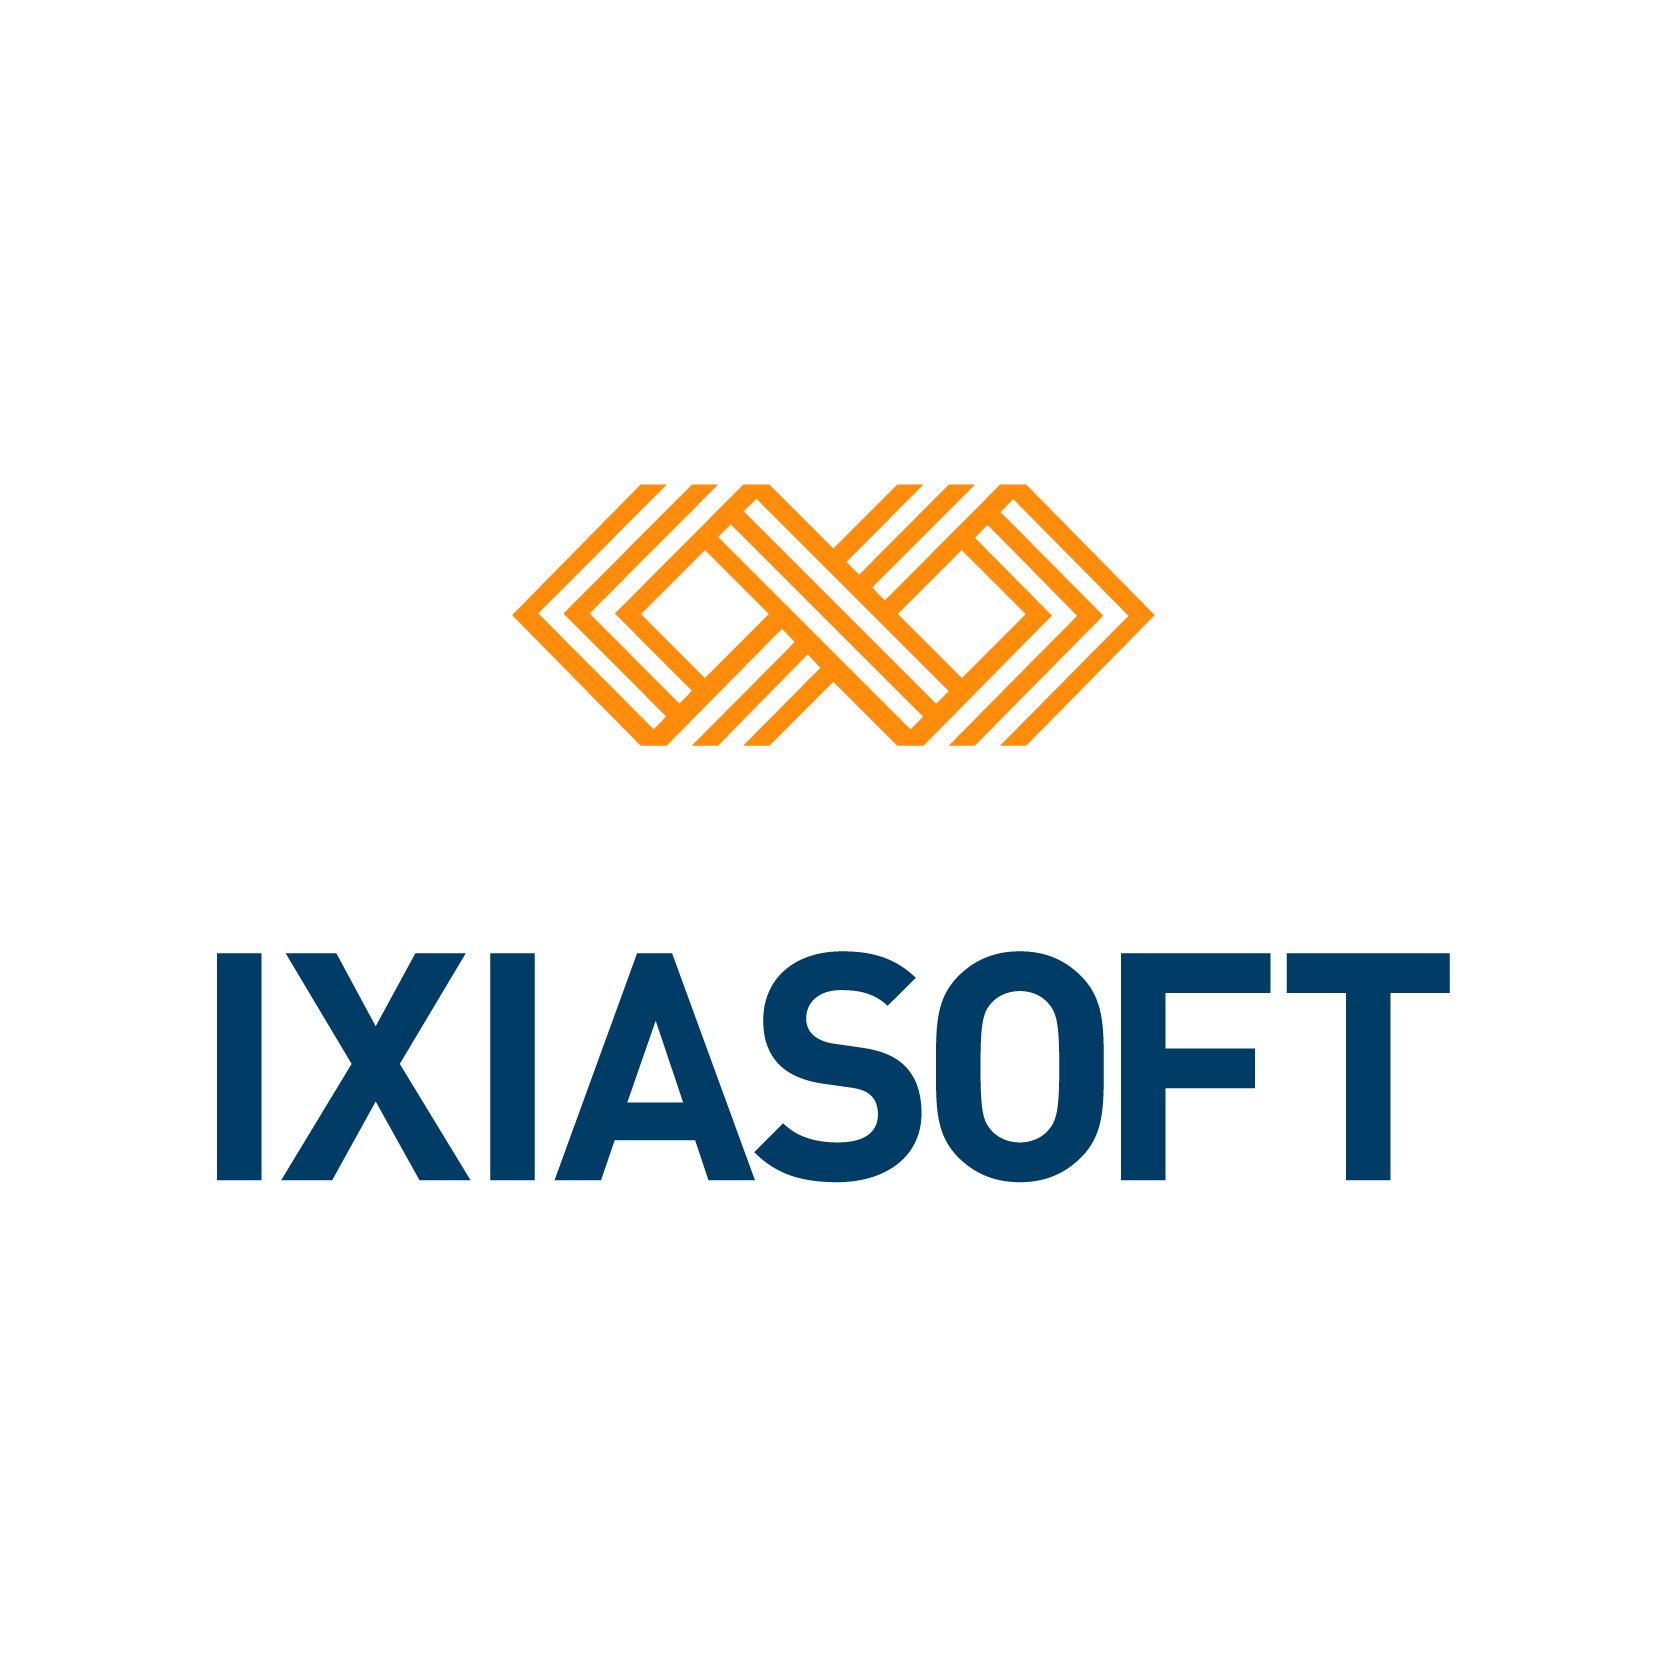 IXIASOFT-logoupdated